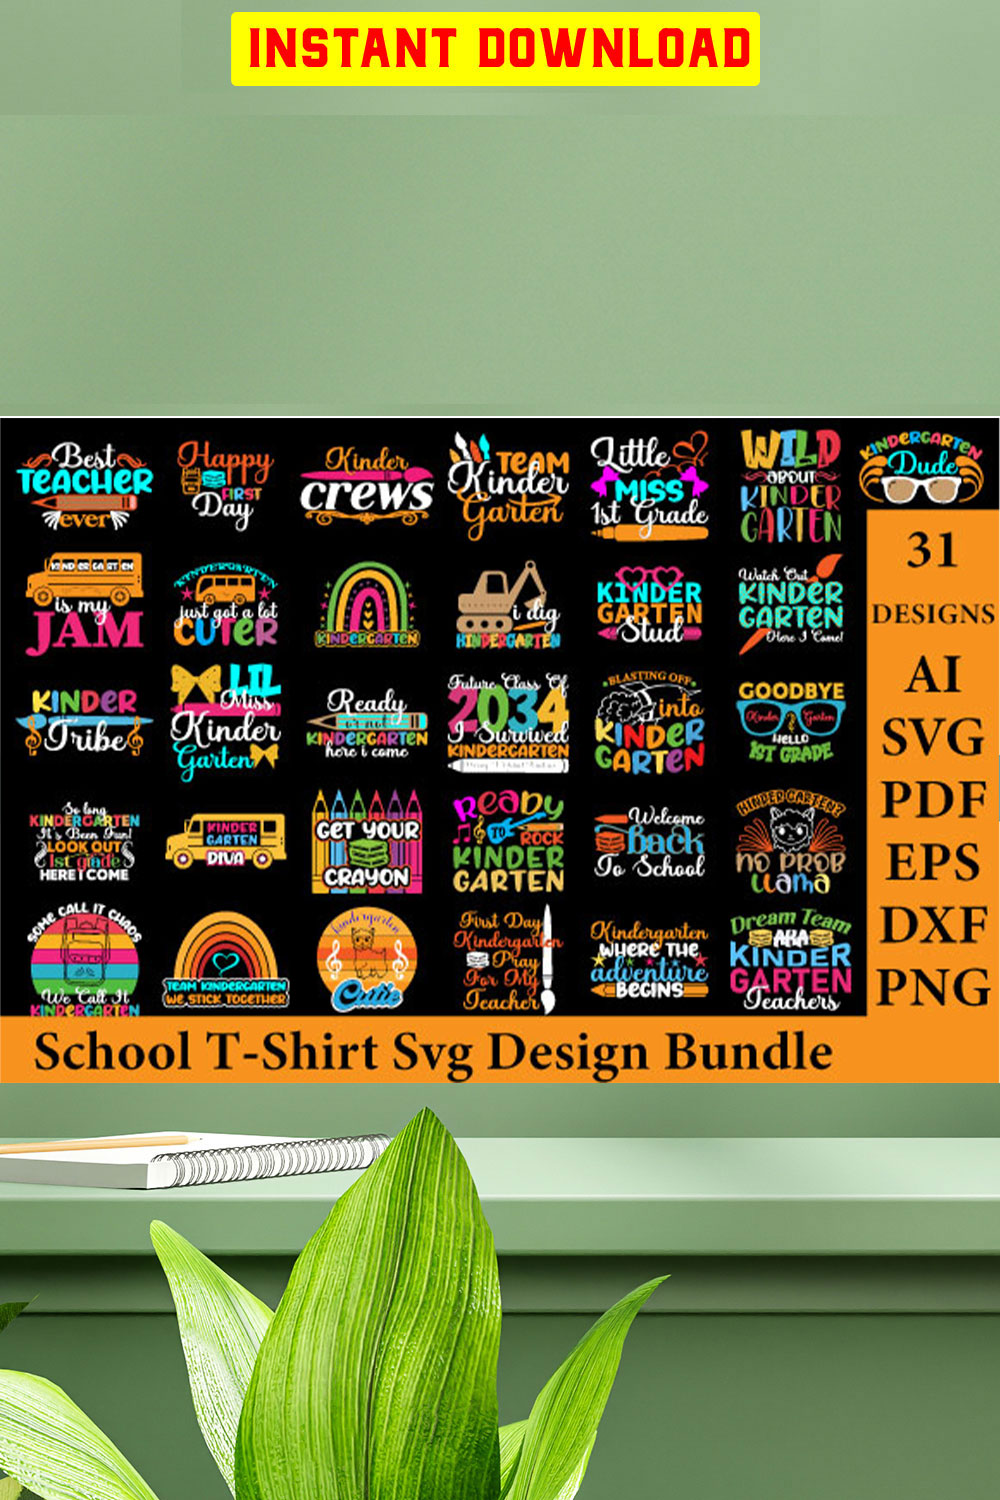 School T-shirt Svg Design Bundle pinterest preview image.